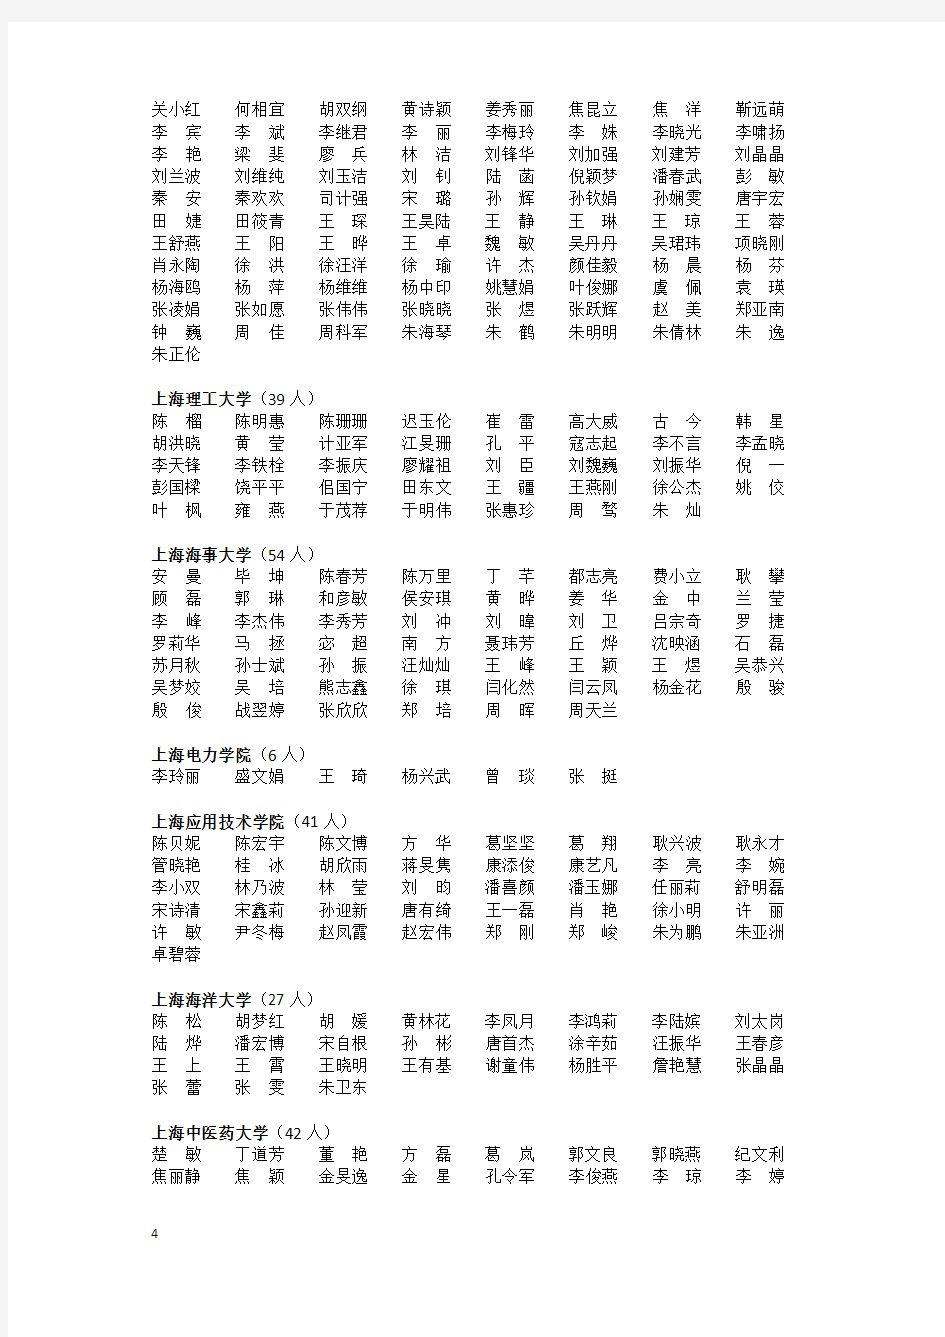 2012年“上海高校青年教师培养资助计划”教师名单